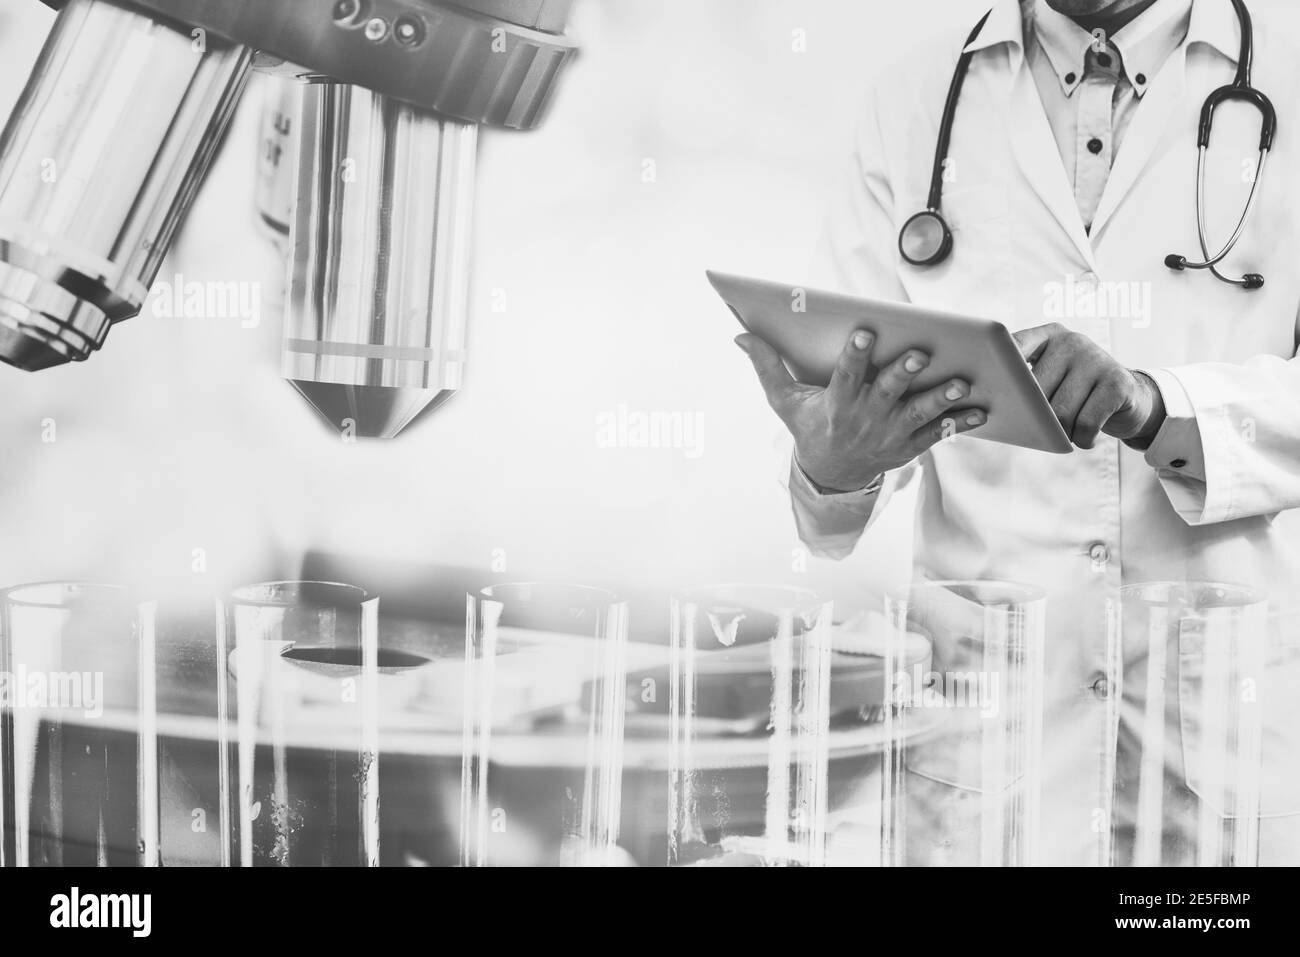 Medizinische Wissenschaft Forschung und Entwicklung Konzept - Arzt hält Tablet-Computer mit wissenschaftlichen Instrument, Mikroskop und chemischen Reagenzglas im Labor Stockfoto